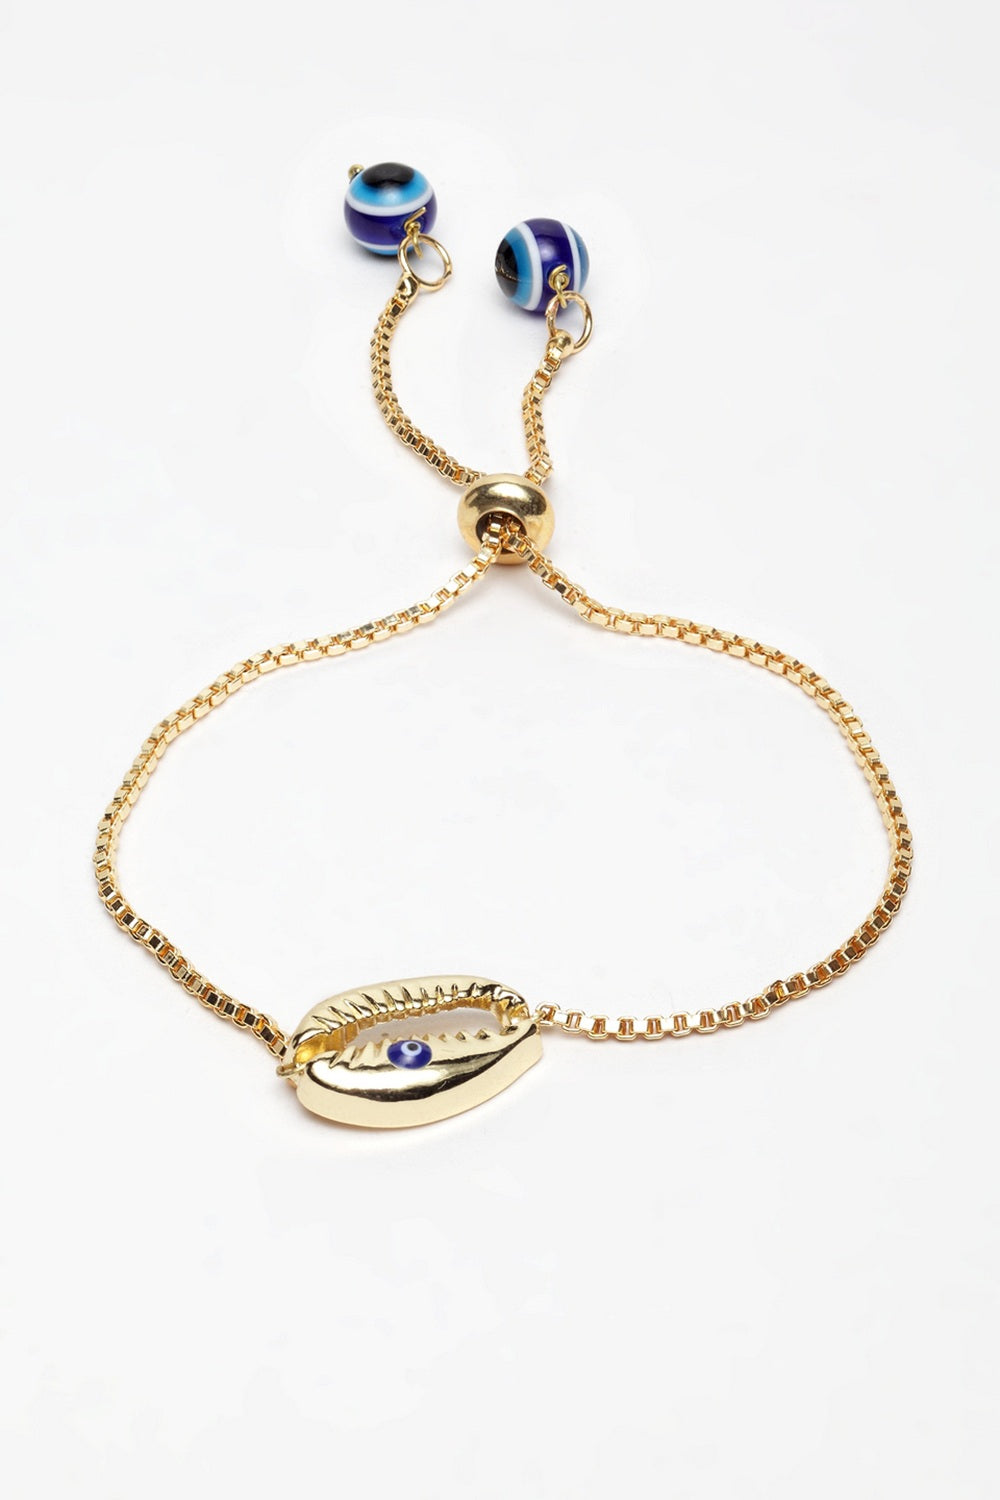 Buy Women's Jewellery Online